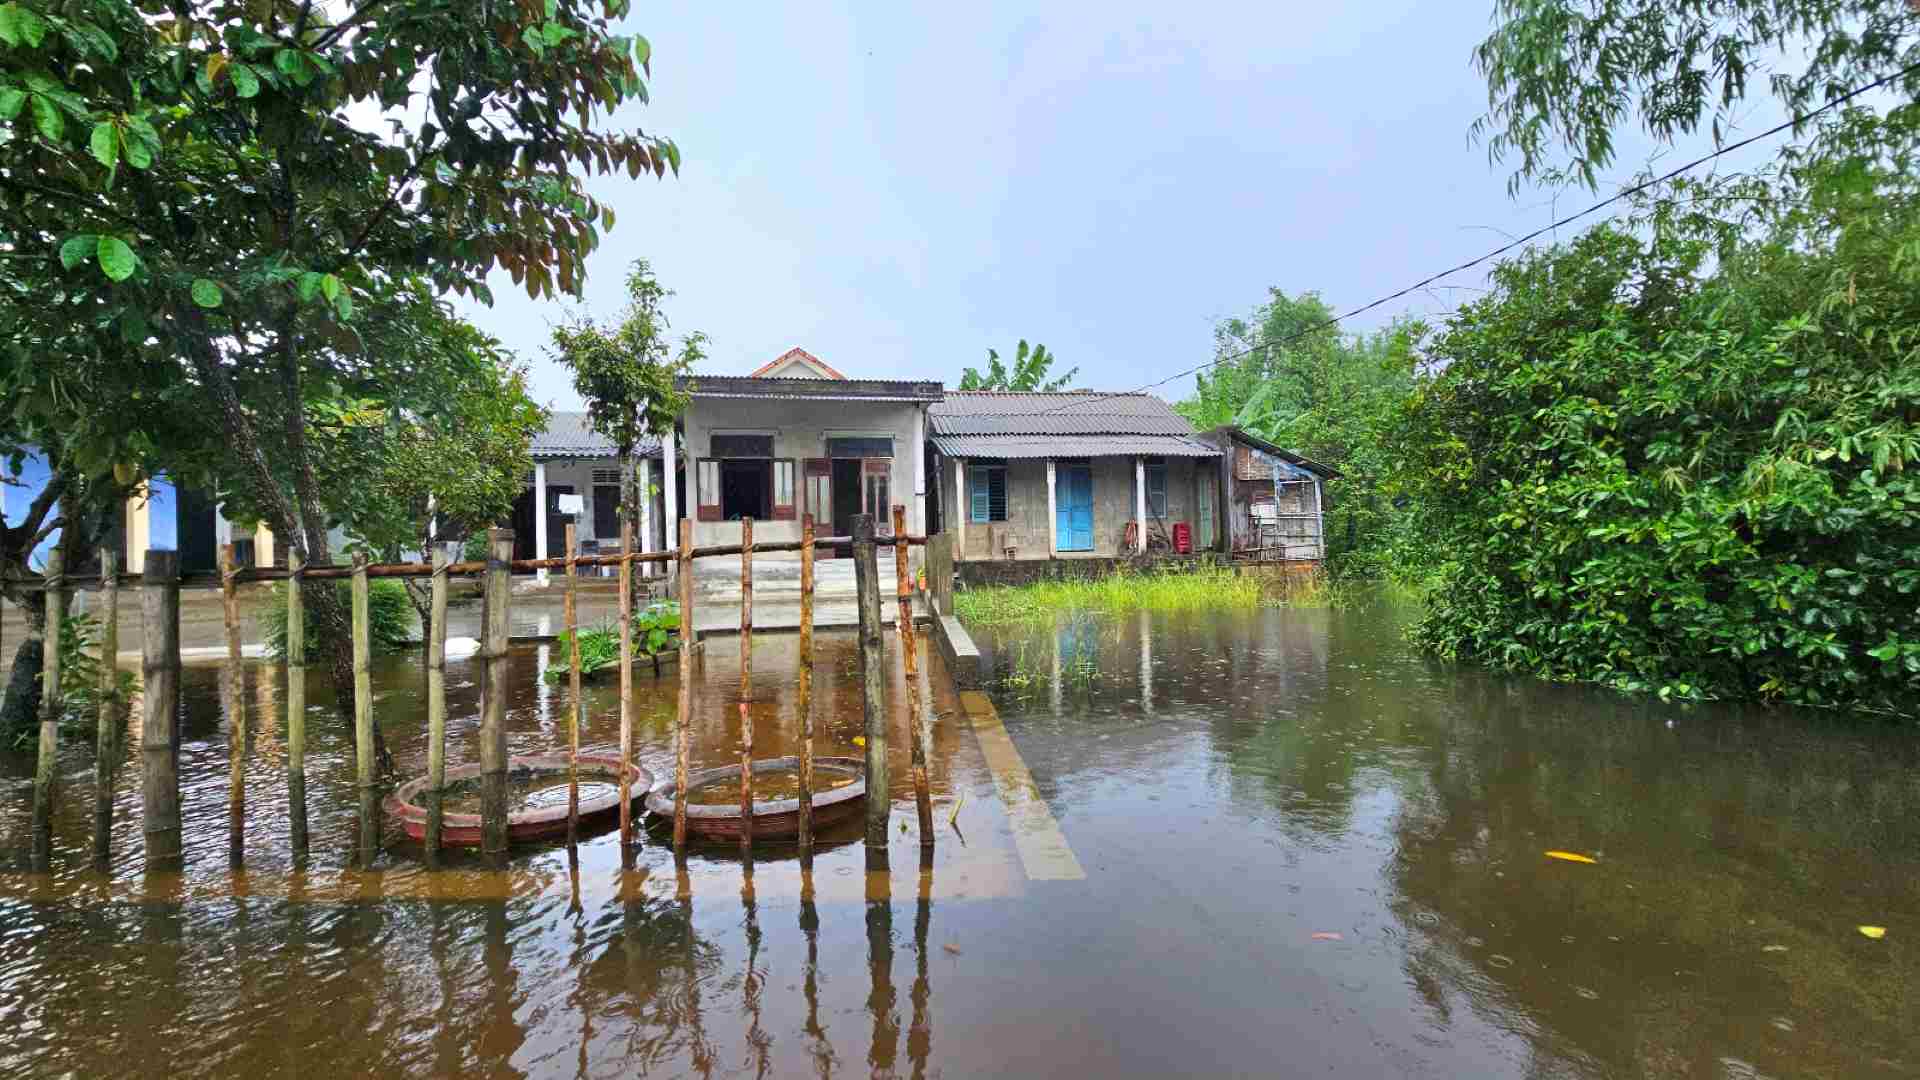 Cái làng thấp trũng nhất ở Thừa Thiên Huế, ngan, vịt bơi đầy sân, gà &quot;chạy&quot; lên gác, đường xóm thành sông - Ảnh 4.